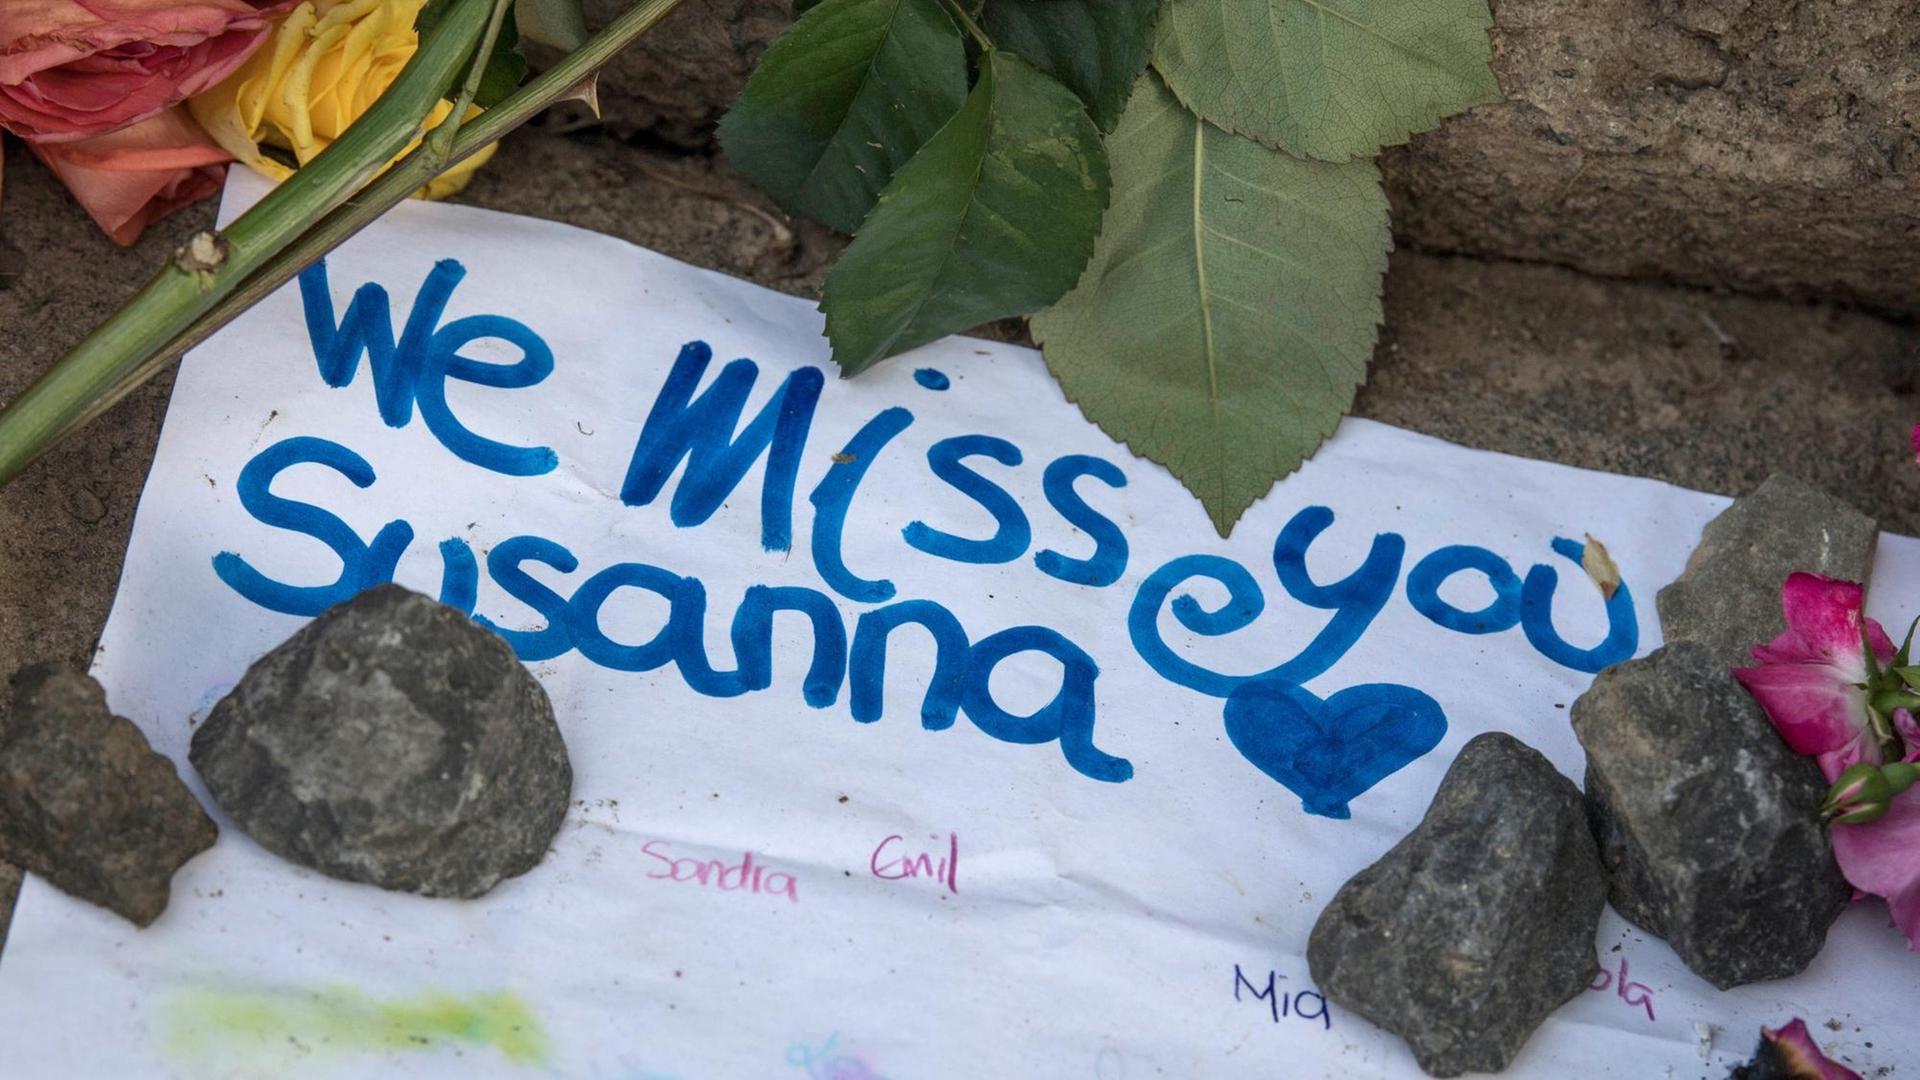 Auf einem weißen Zettel am Boden liegend neben Blumen und Steine steht "We muss you Susanna".